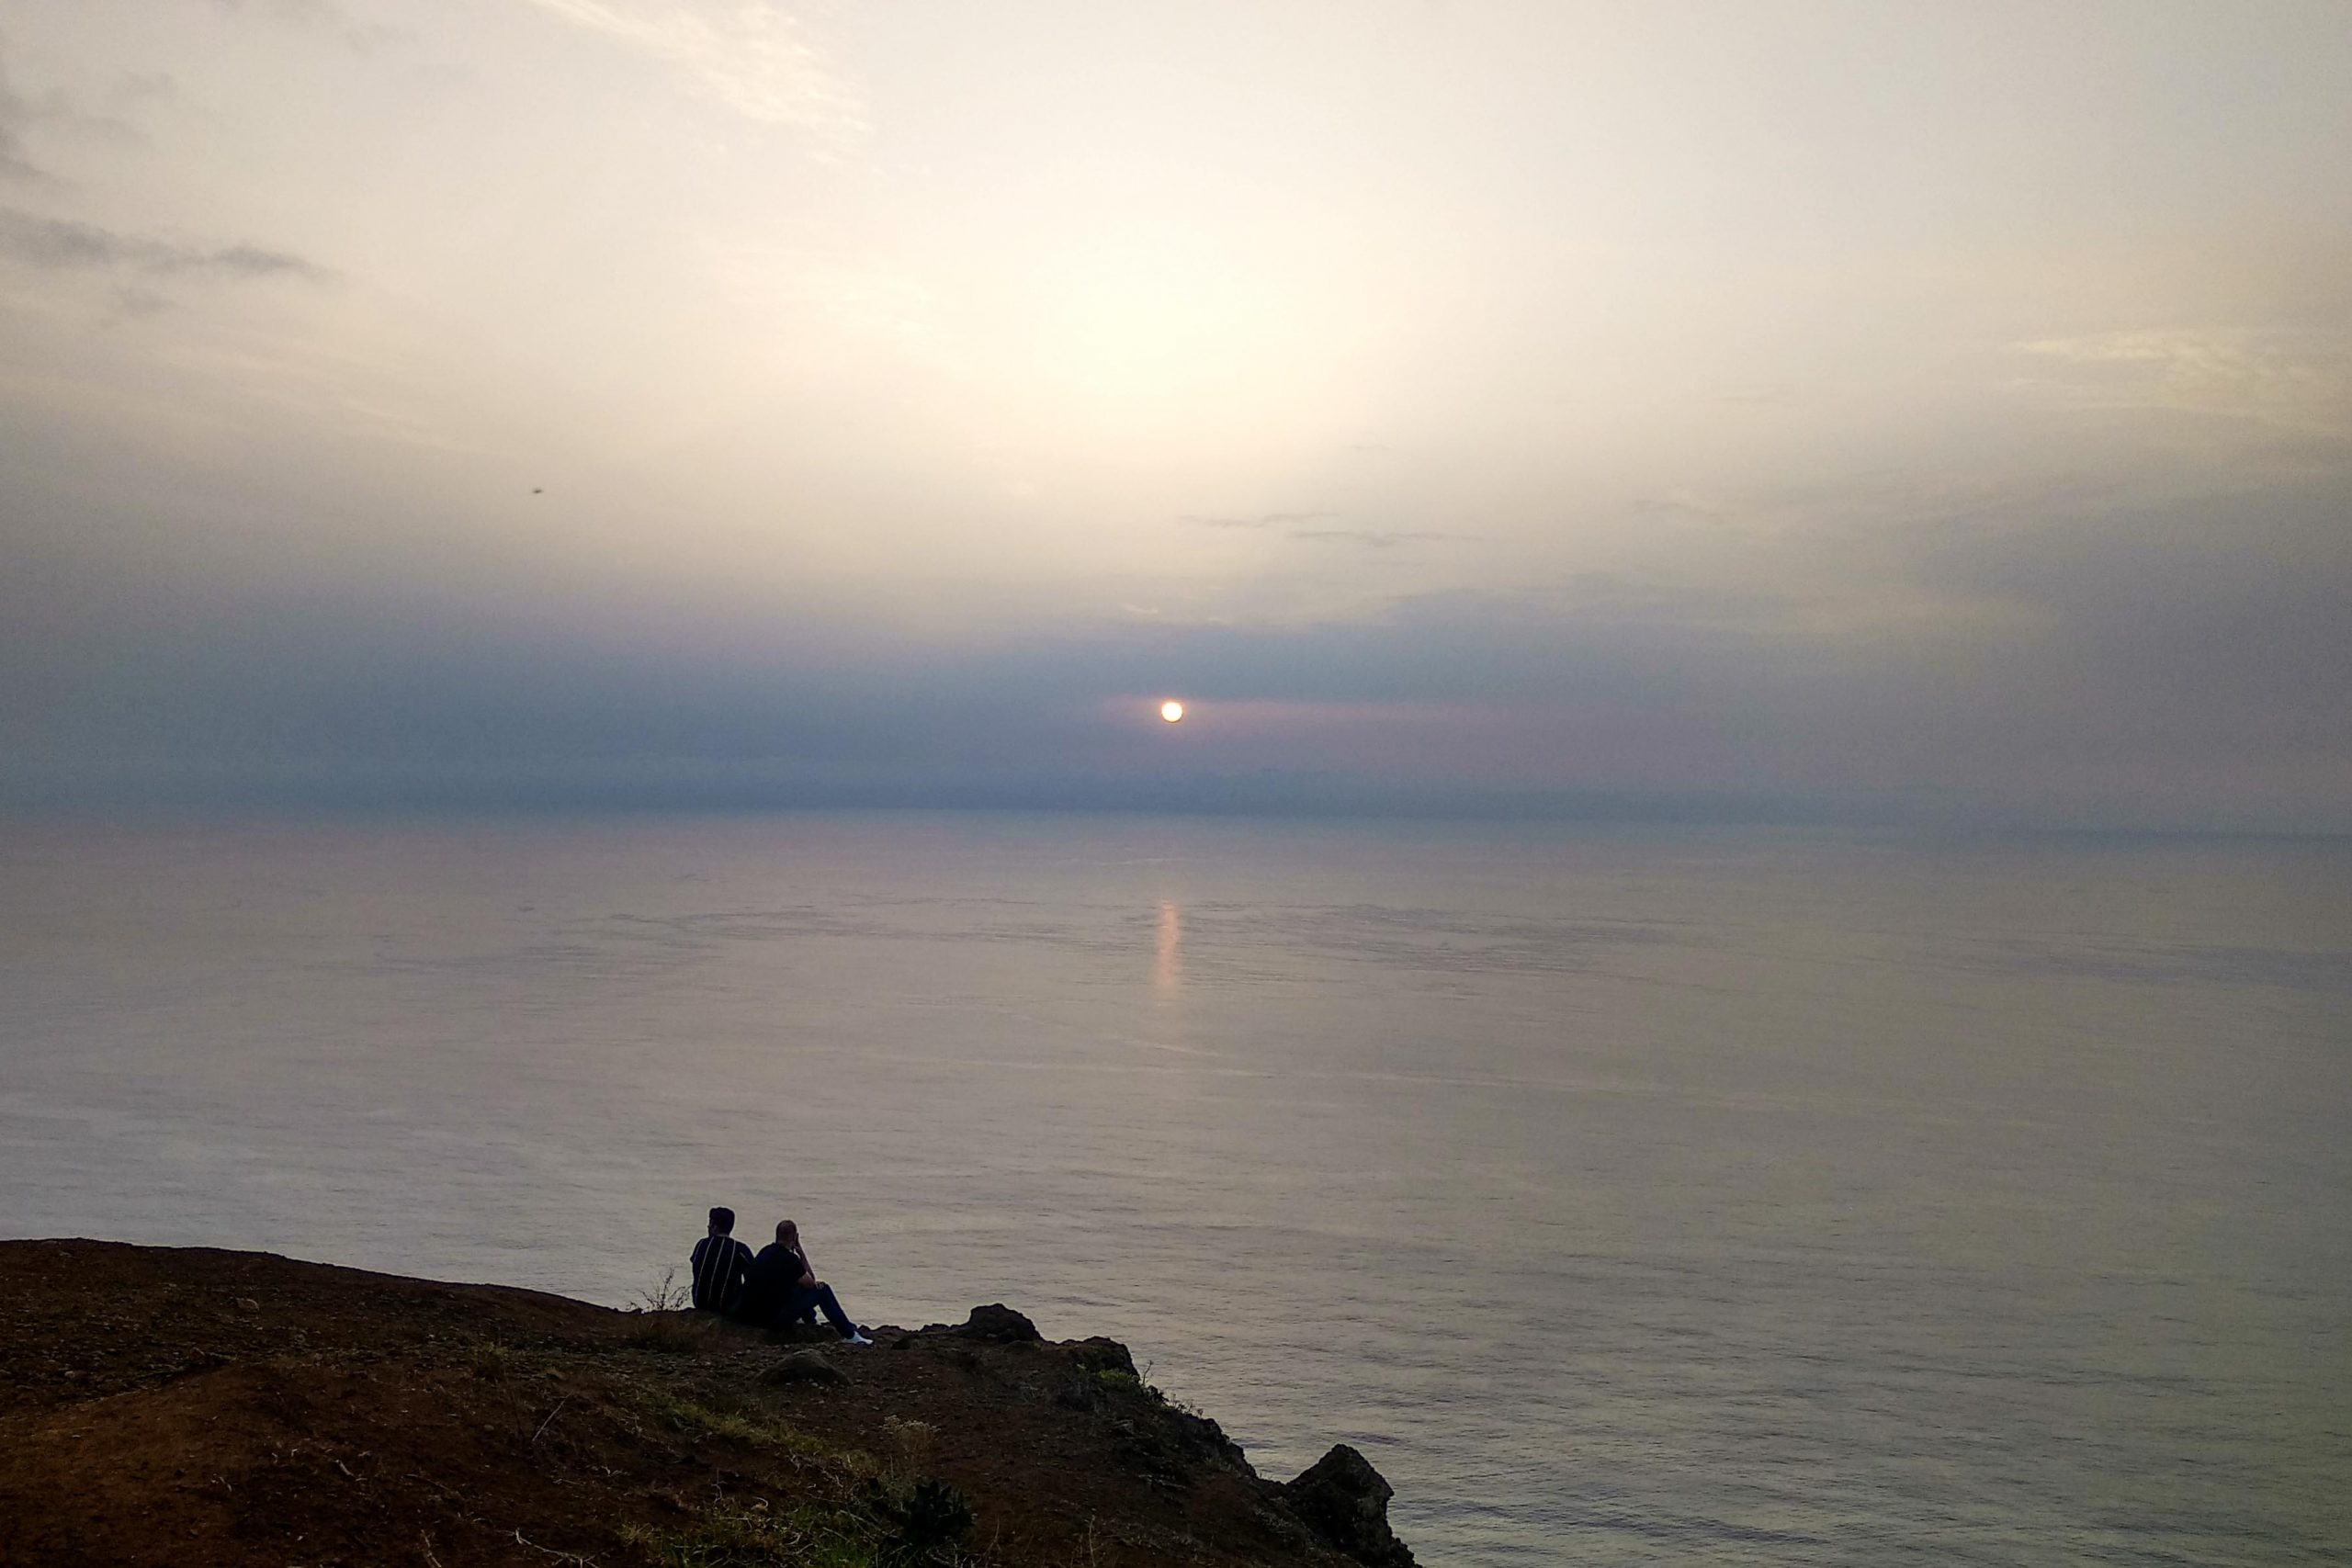 Zona privilegiada da ilha para ver o pôr-do-sol, na Ponta do Pargo, Madeira